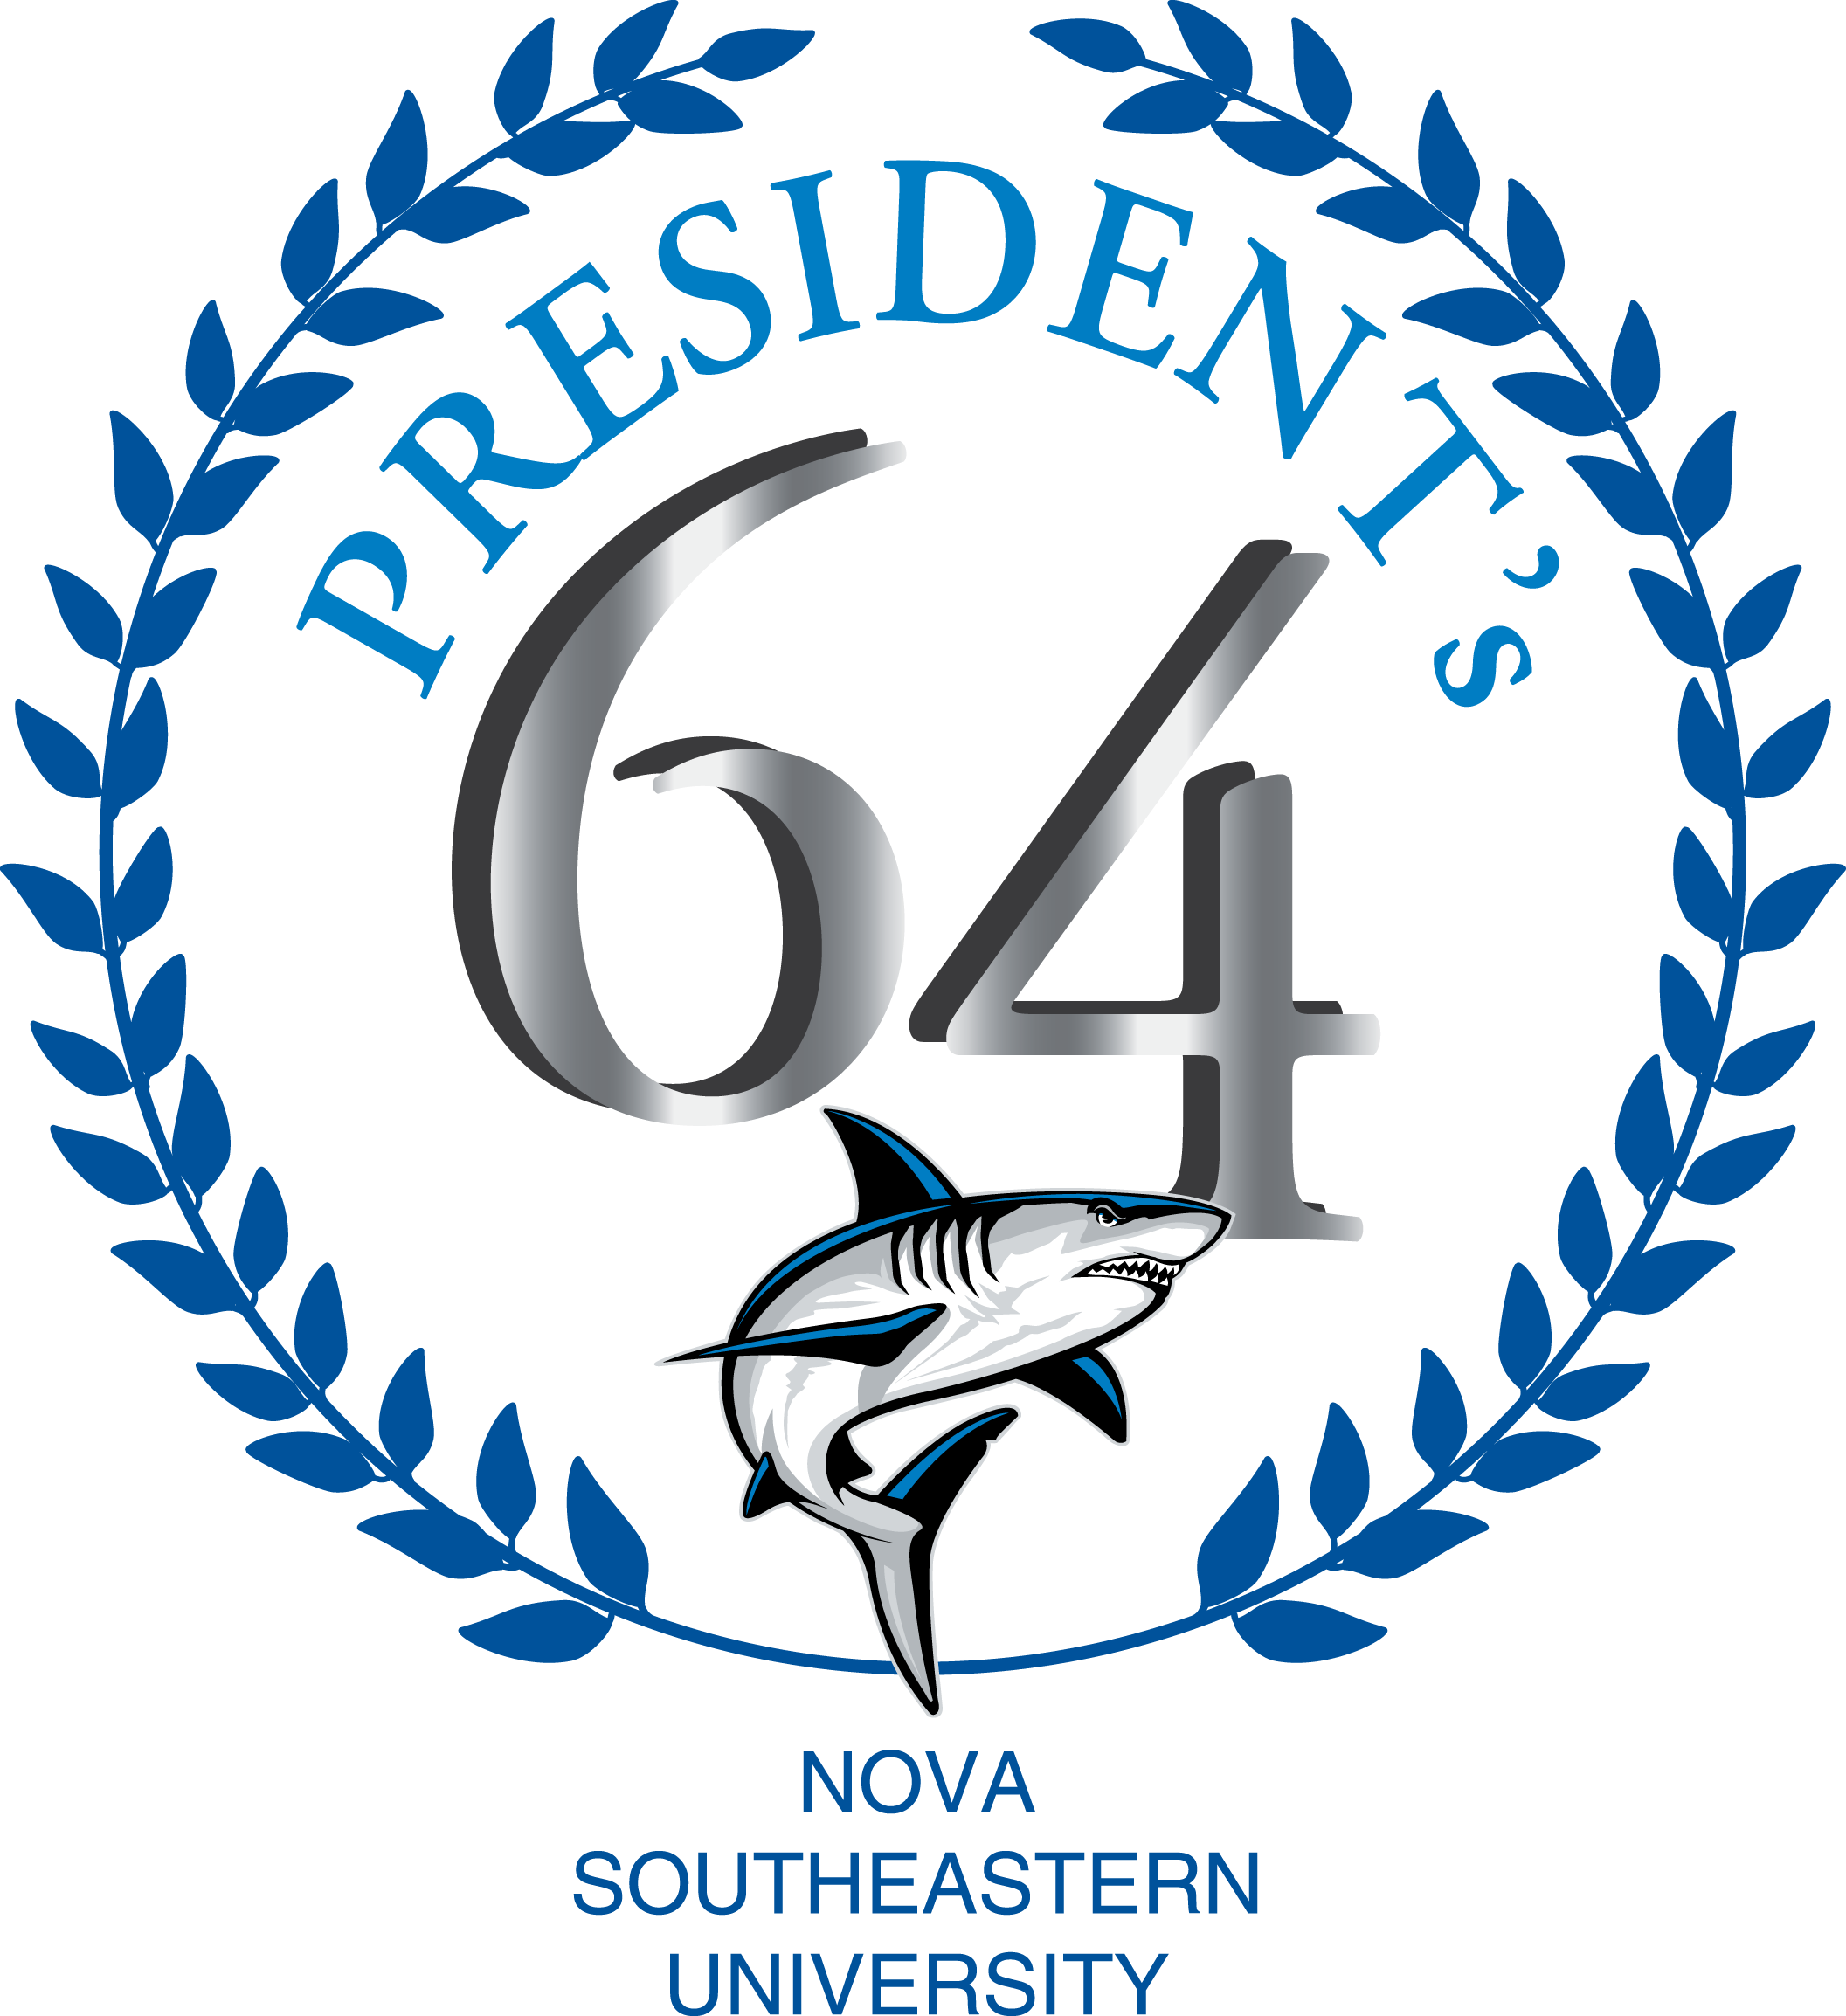 The President's 64 Logo